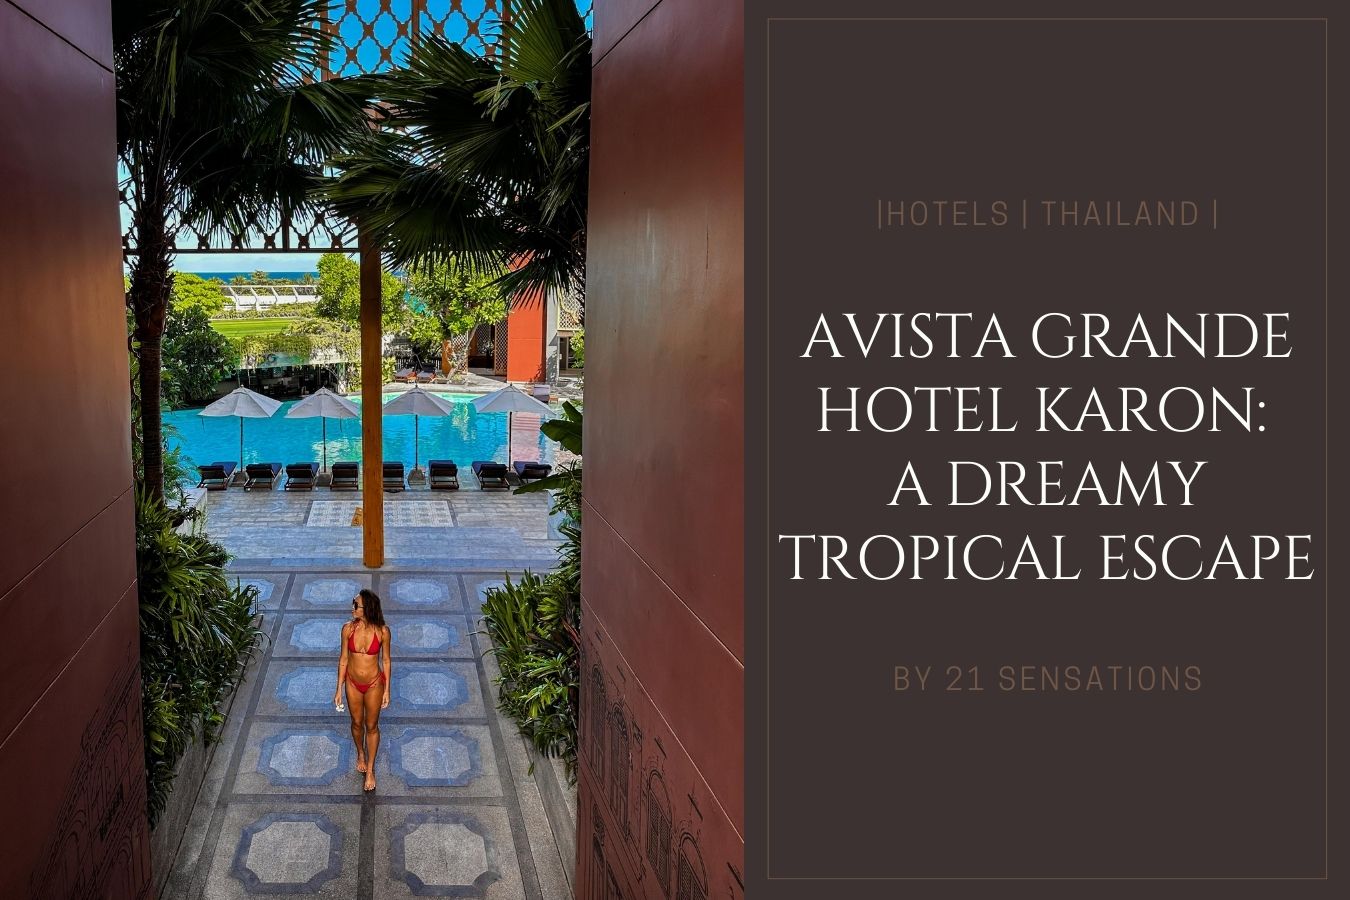 Avista Grande Hotel Karon A Dreamy Tropical Escape in Phuket